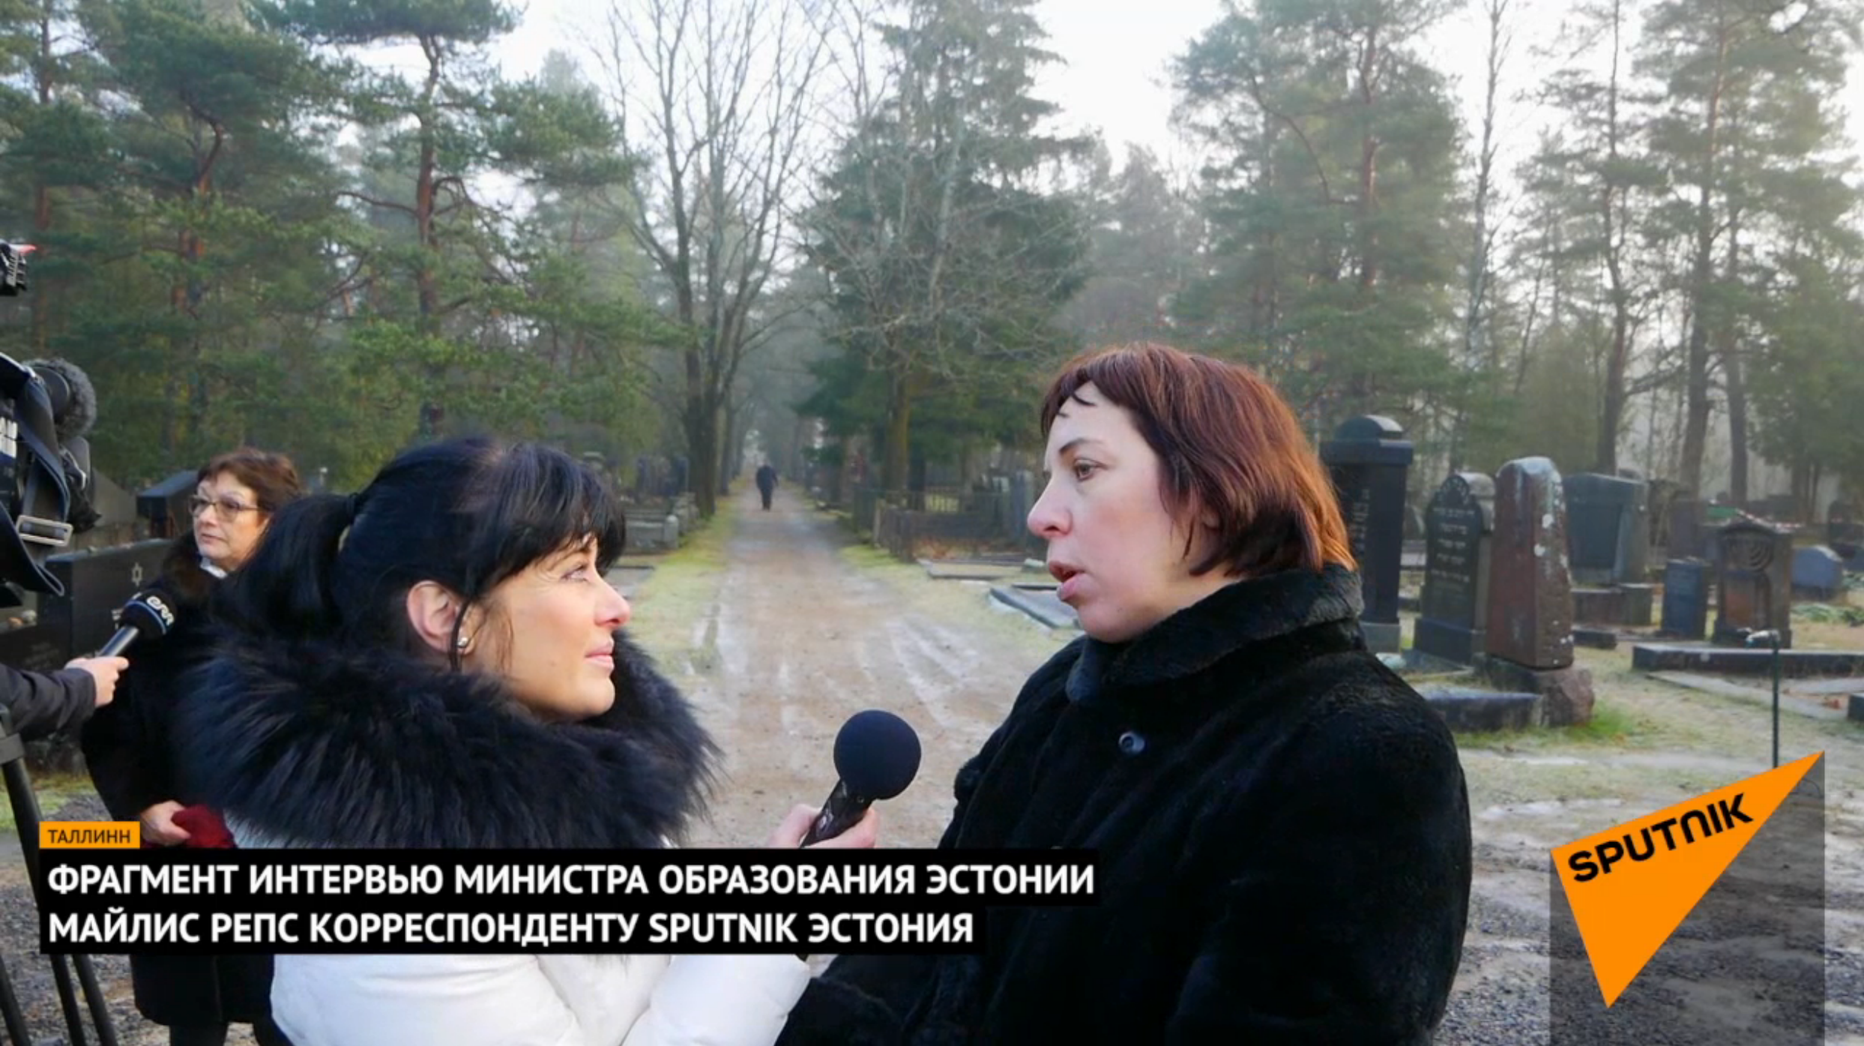 Kuvatõmmis videost, kus haridusminister Mailis Reps vestleb Sputniku ajakirjanikuga.